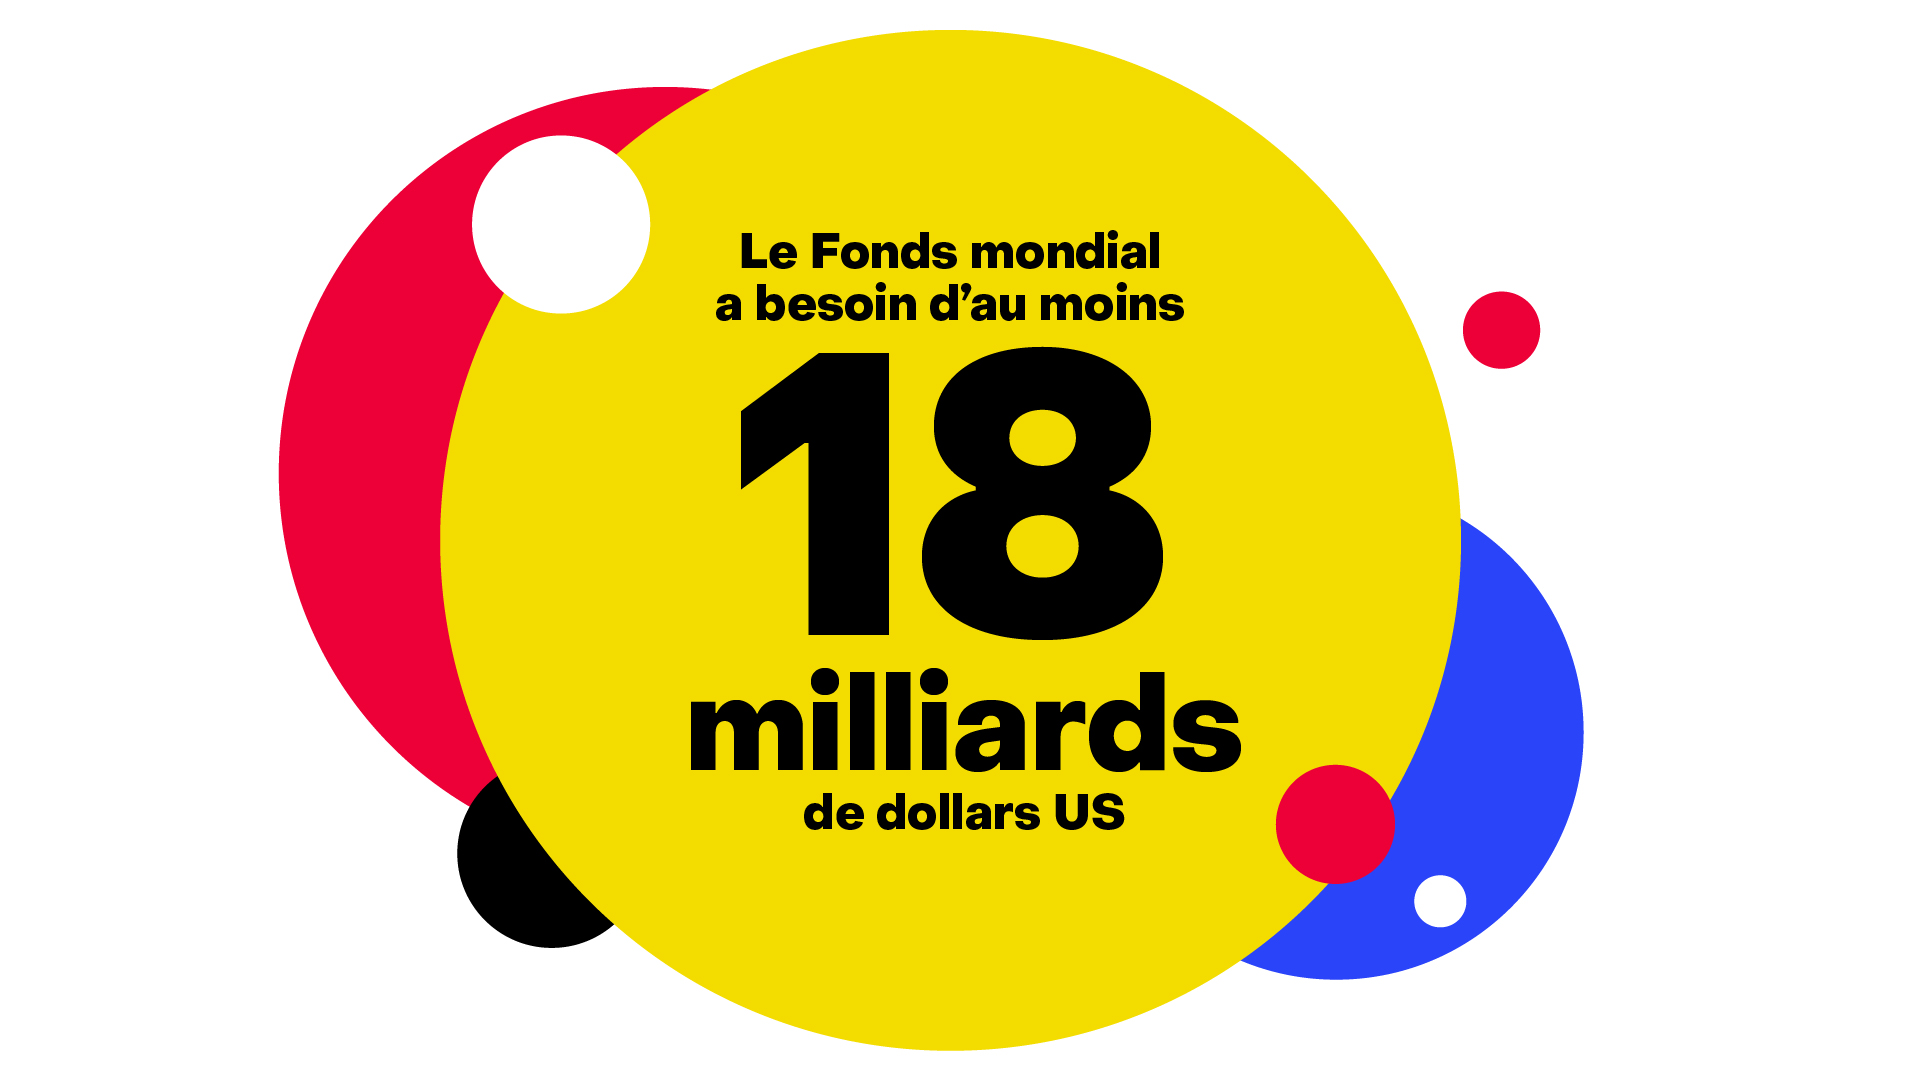 Le Fond mondial a besoin d'au moins 18 milliards de dollars US